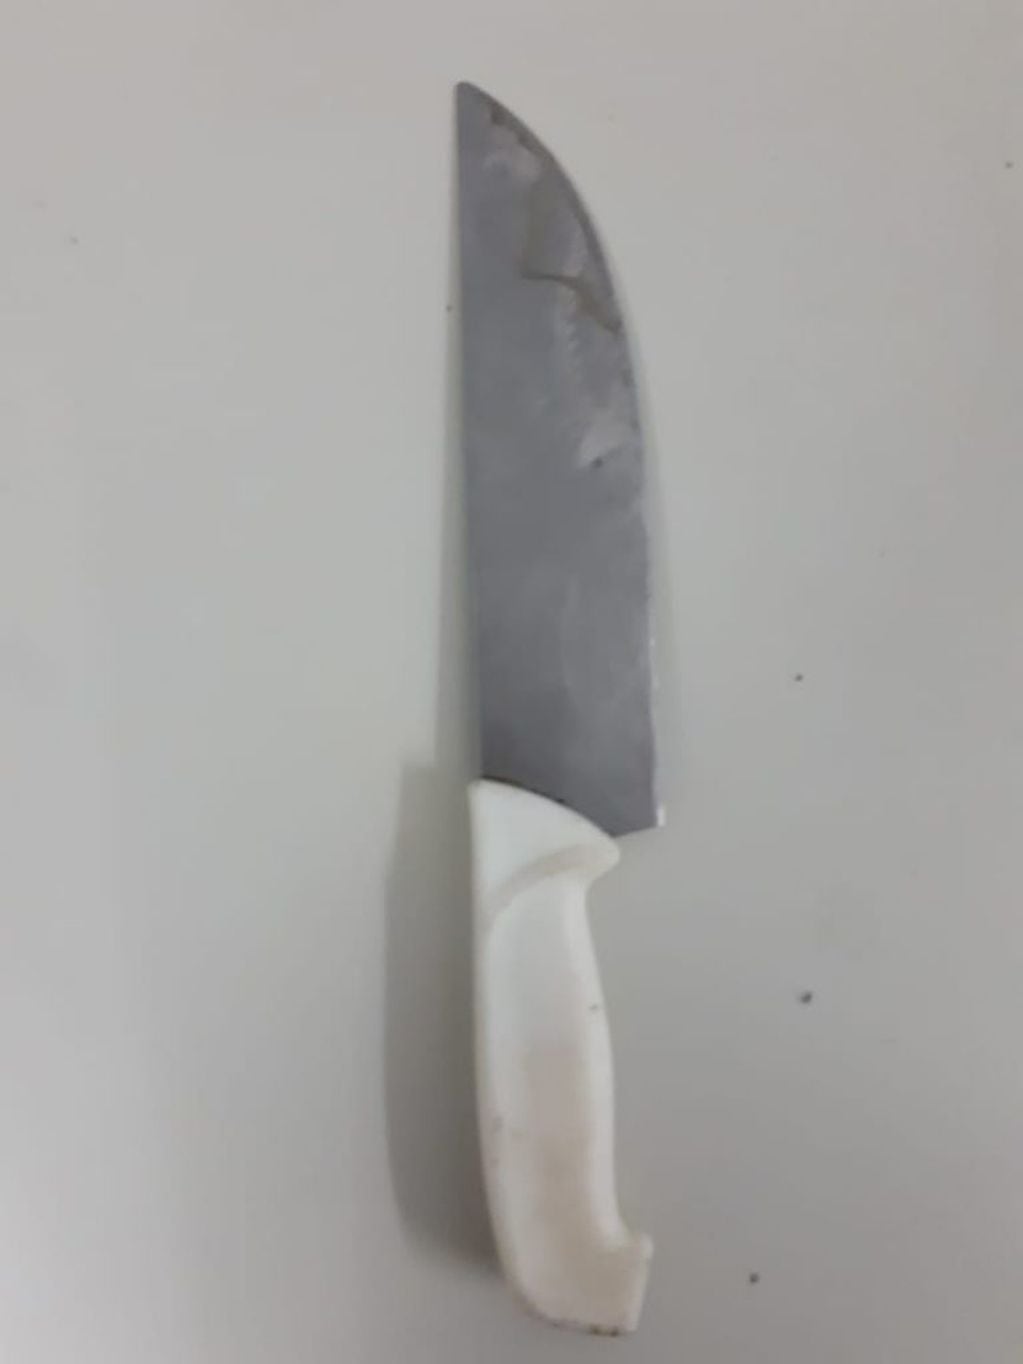 El cuchillo que utilizaron para amenazar a la familia.